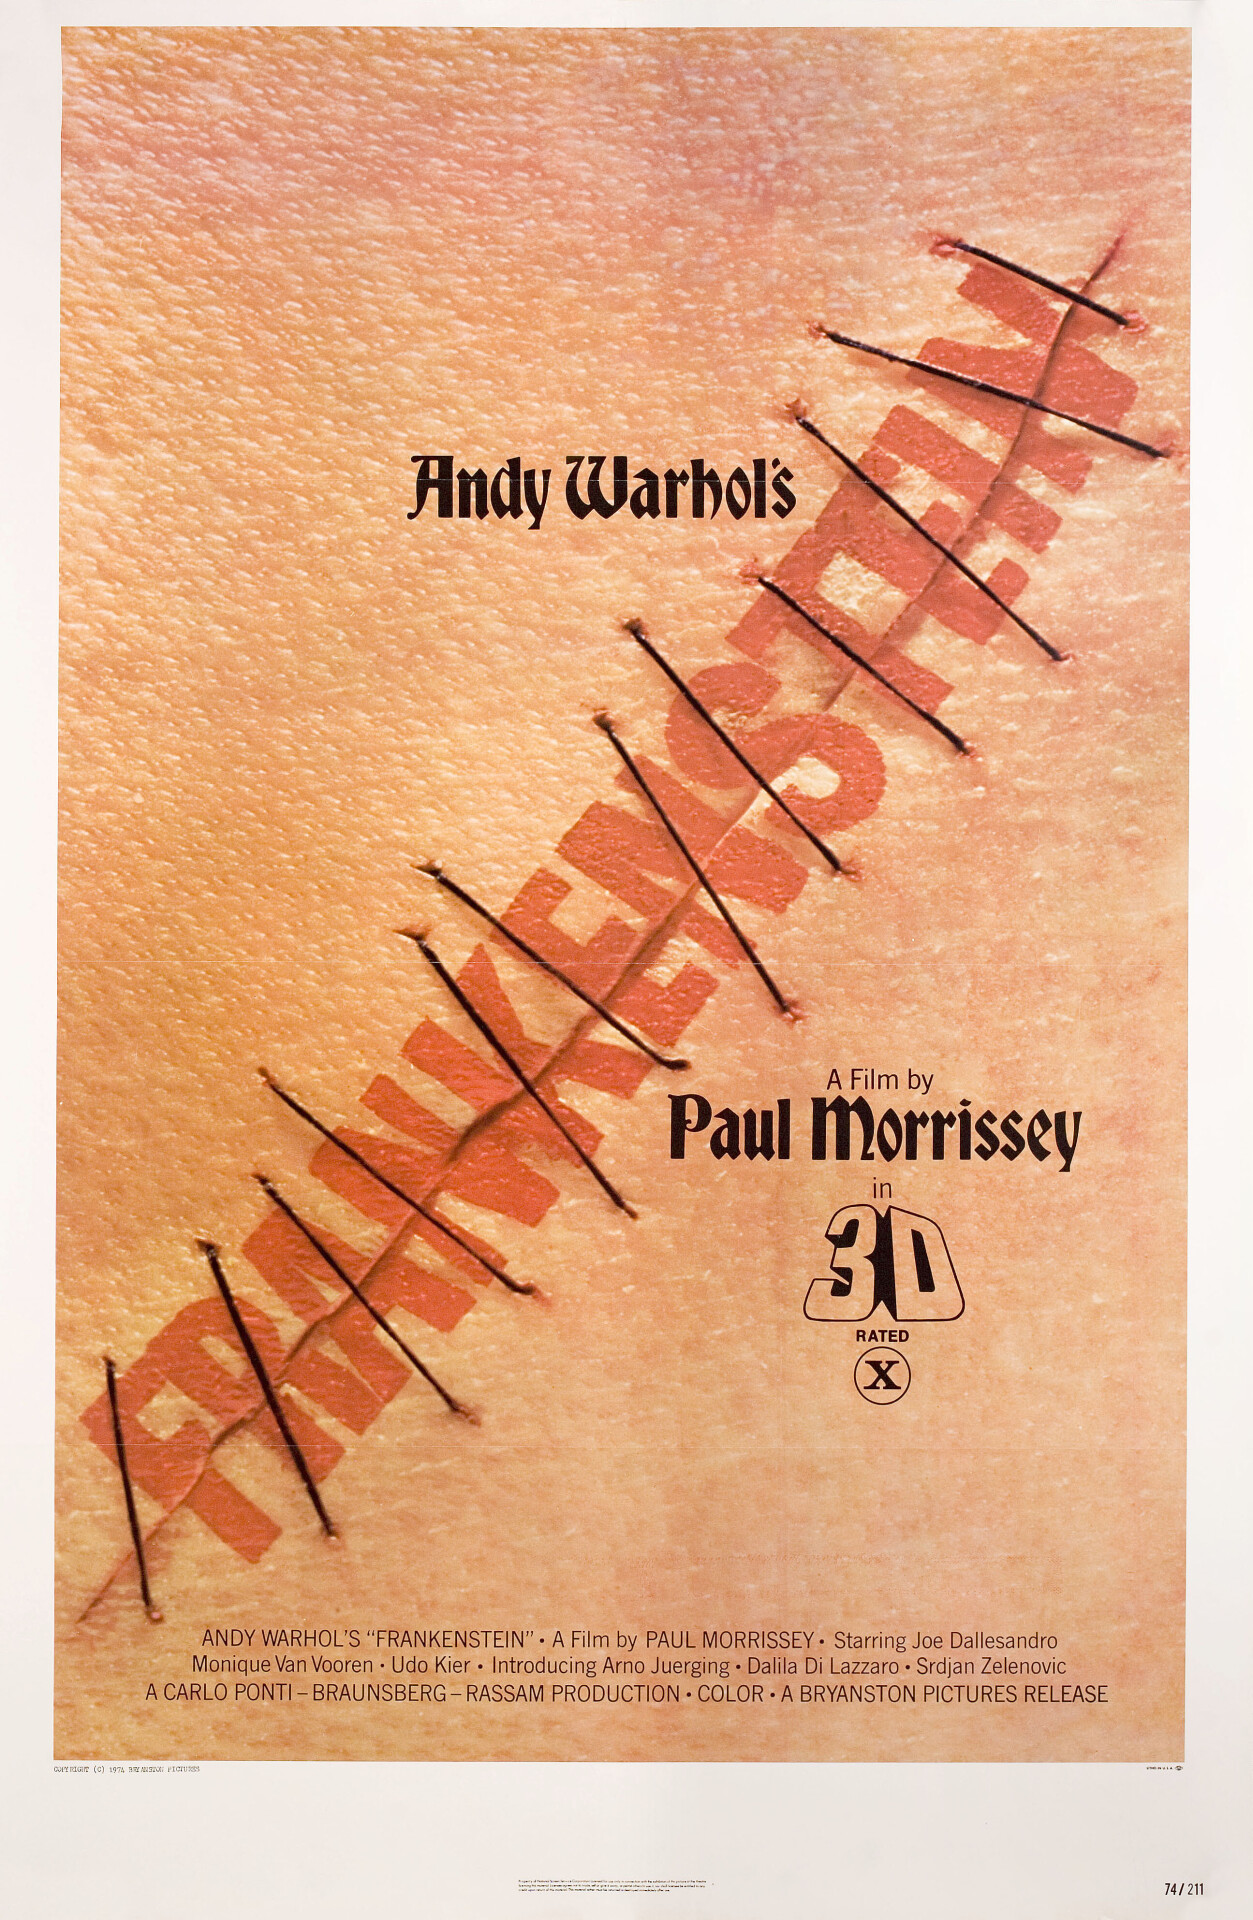 Тело для Франкенштейна (Andy Warhols Frankenstein, 1973), режиссёр Пол Моррисси, американский постер к фильму (монстры, 1974 год) (1)